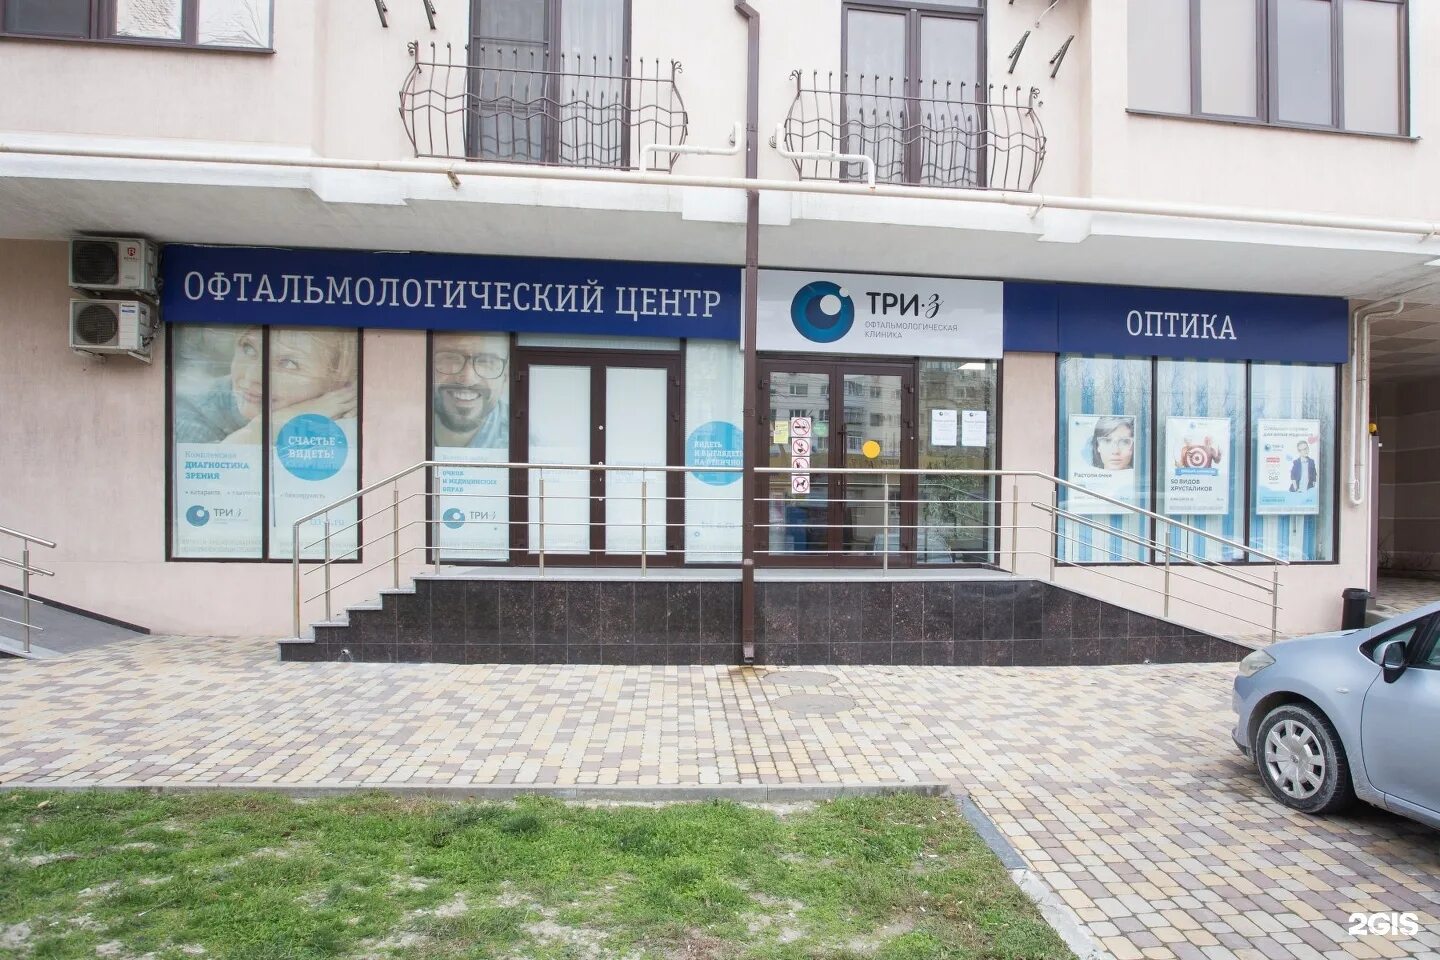 Клиника три z Невинномысск. 3z офтальмологическая клиника. 3z офтальмологическая клиника памятка. Офтальмолог z003.